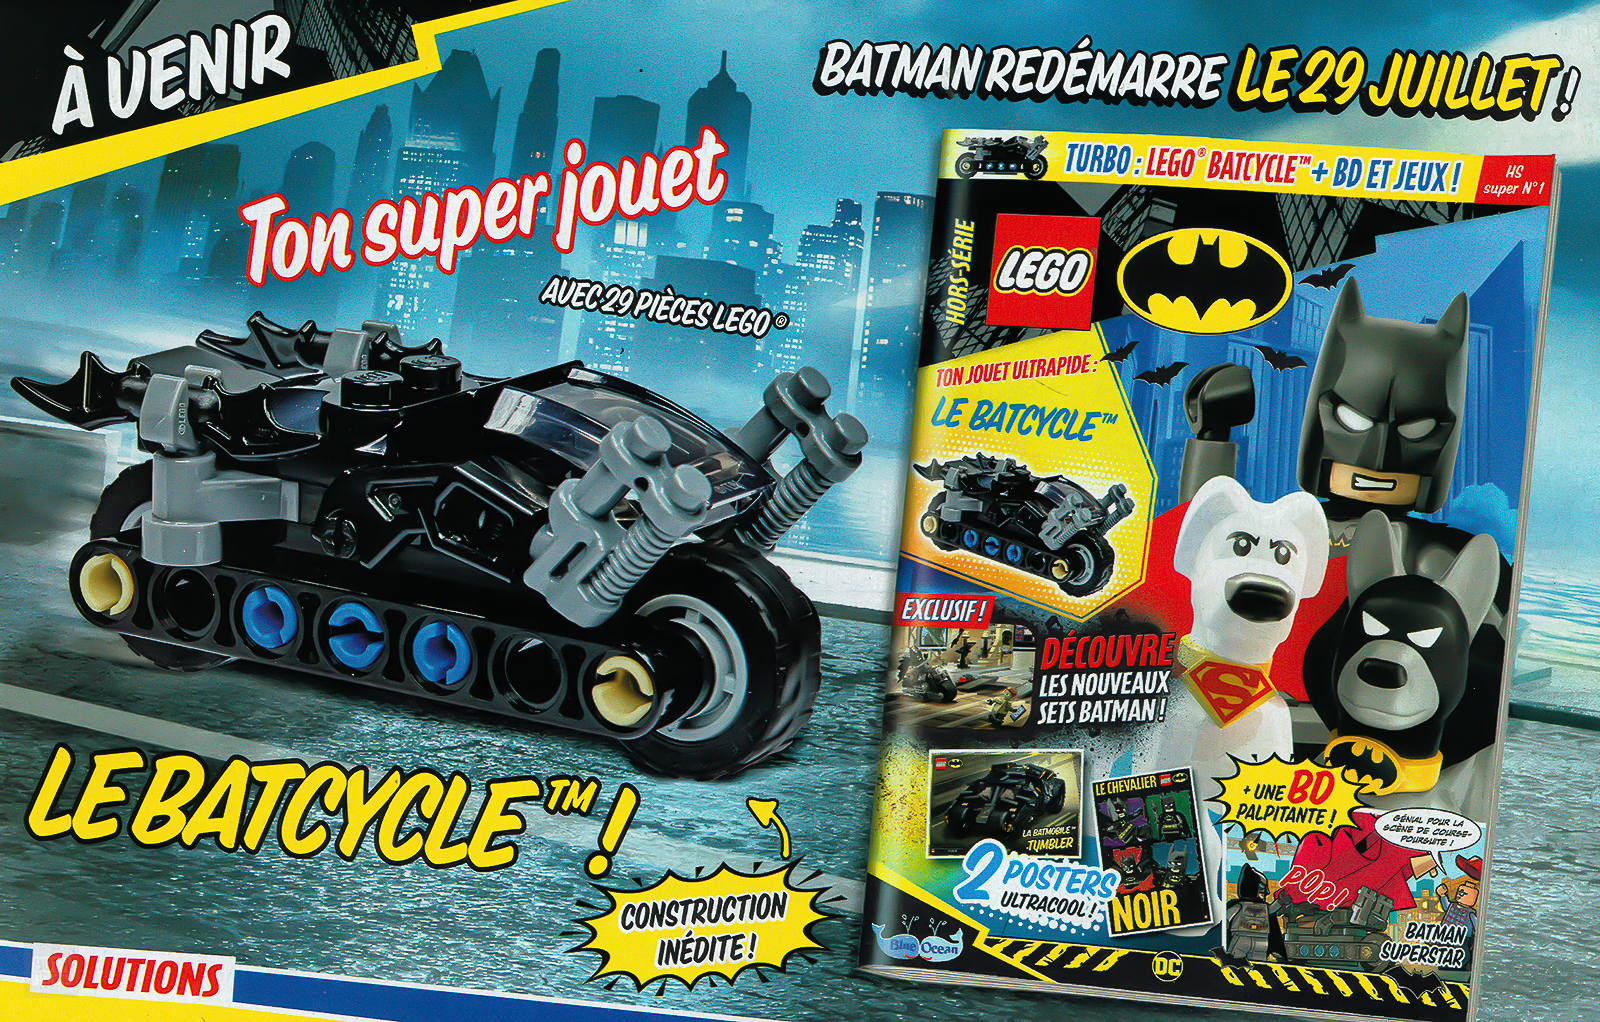 Trên sạp báo: Số tháng 2022 năm XNUMX của tạp chí LEGO Batman chính thức